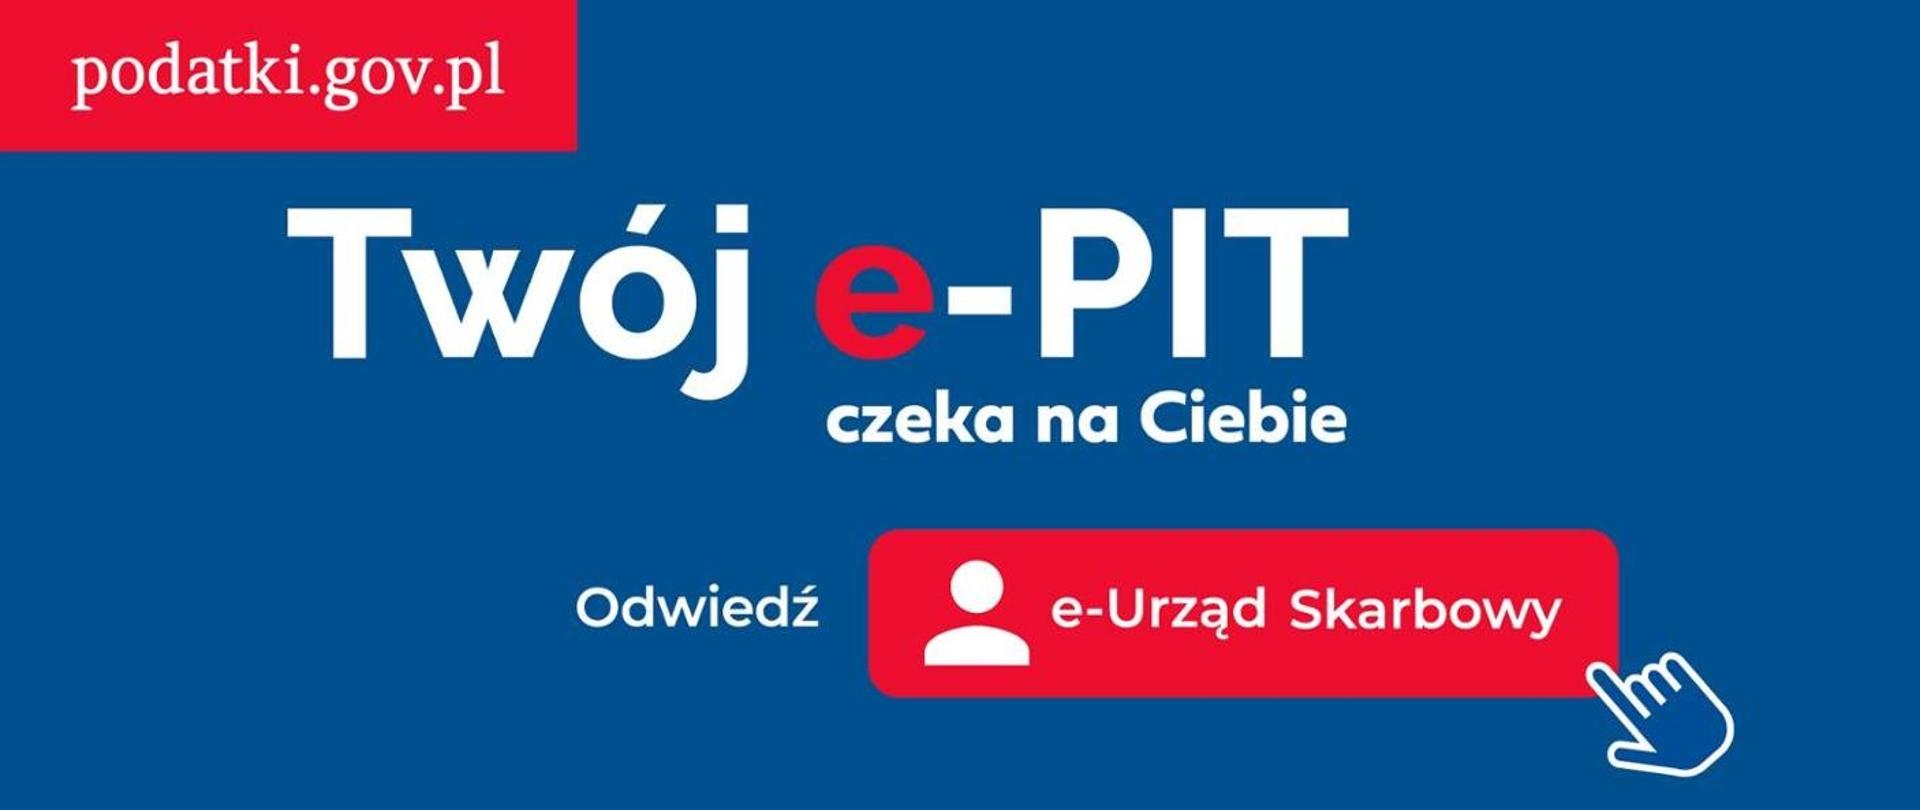 Banner Twój e-PIT